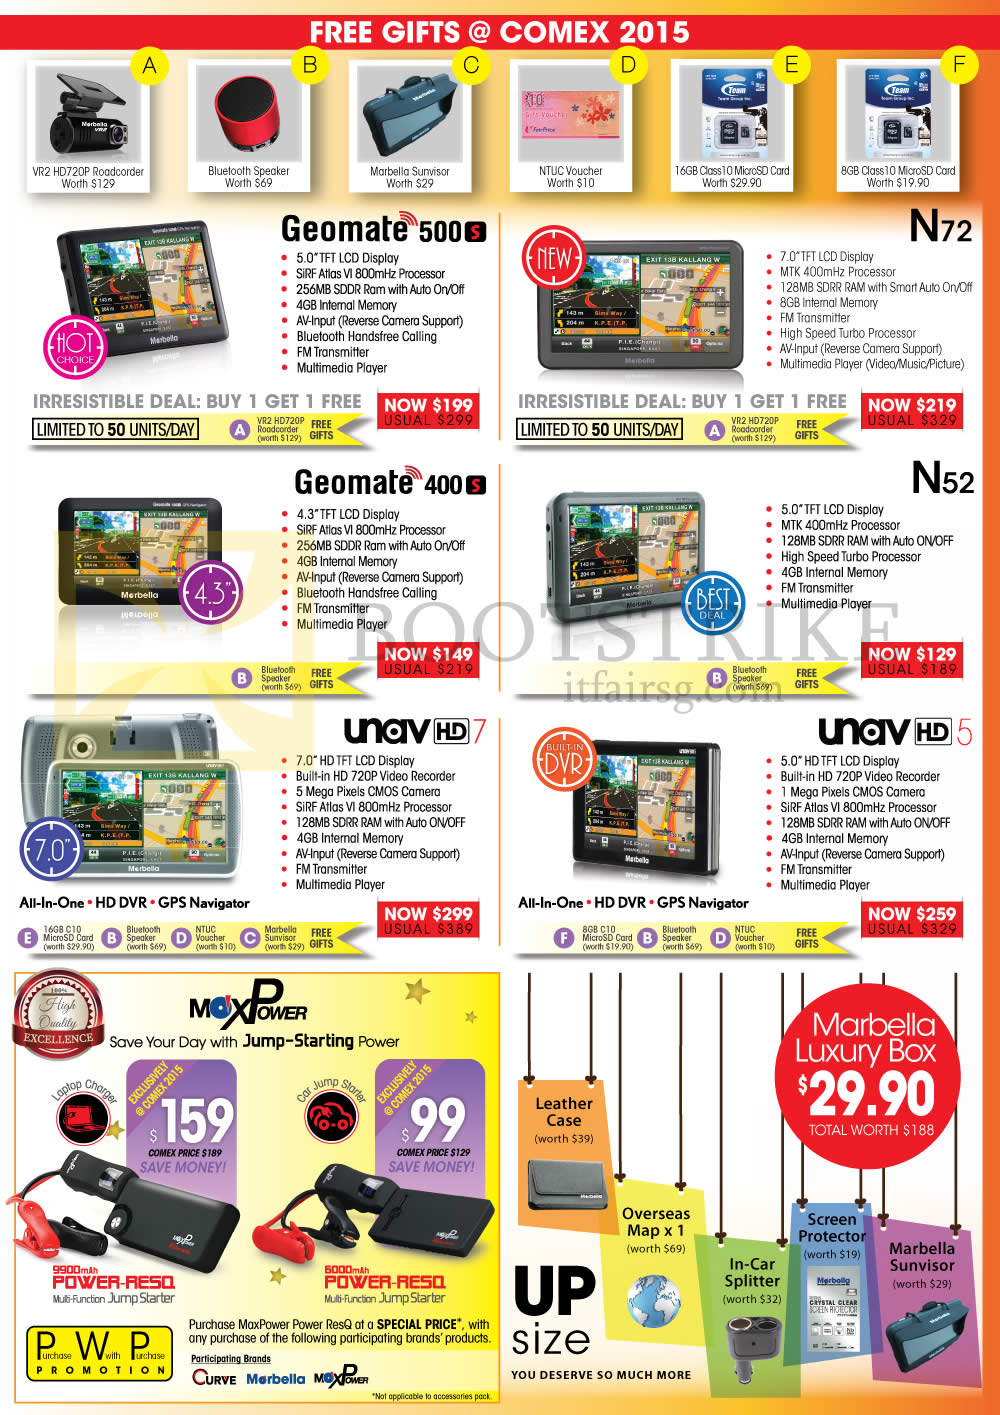 COMEX 2015 price list image brochure of Maka GPS Marbella Navigators, Jump Starter, Geomate 500, 400, N72, N52, Unav HD 5, HD 7, Power RE50